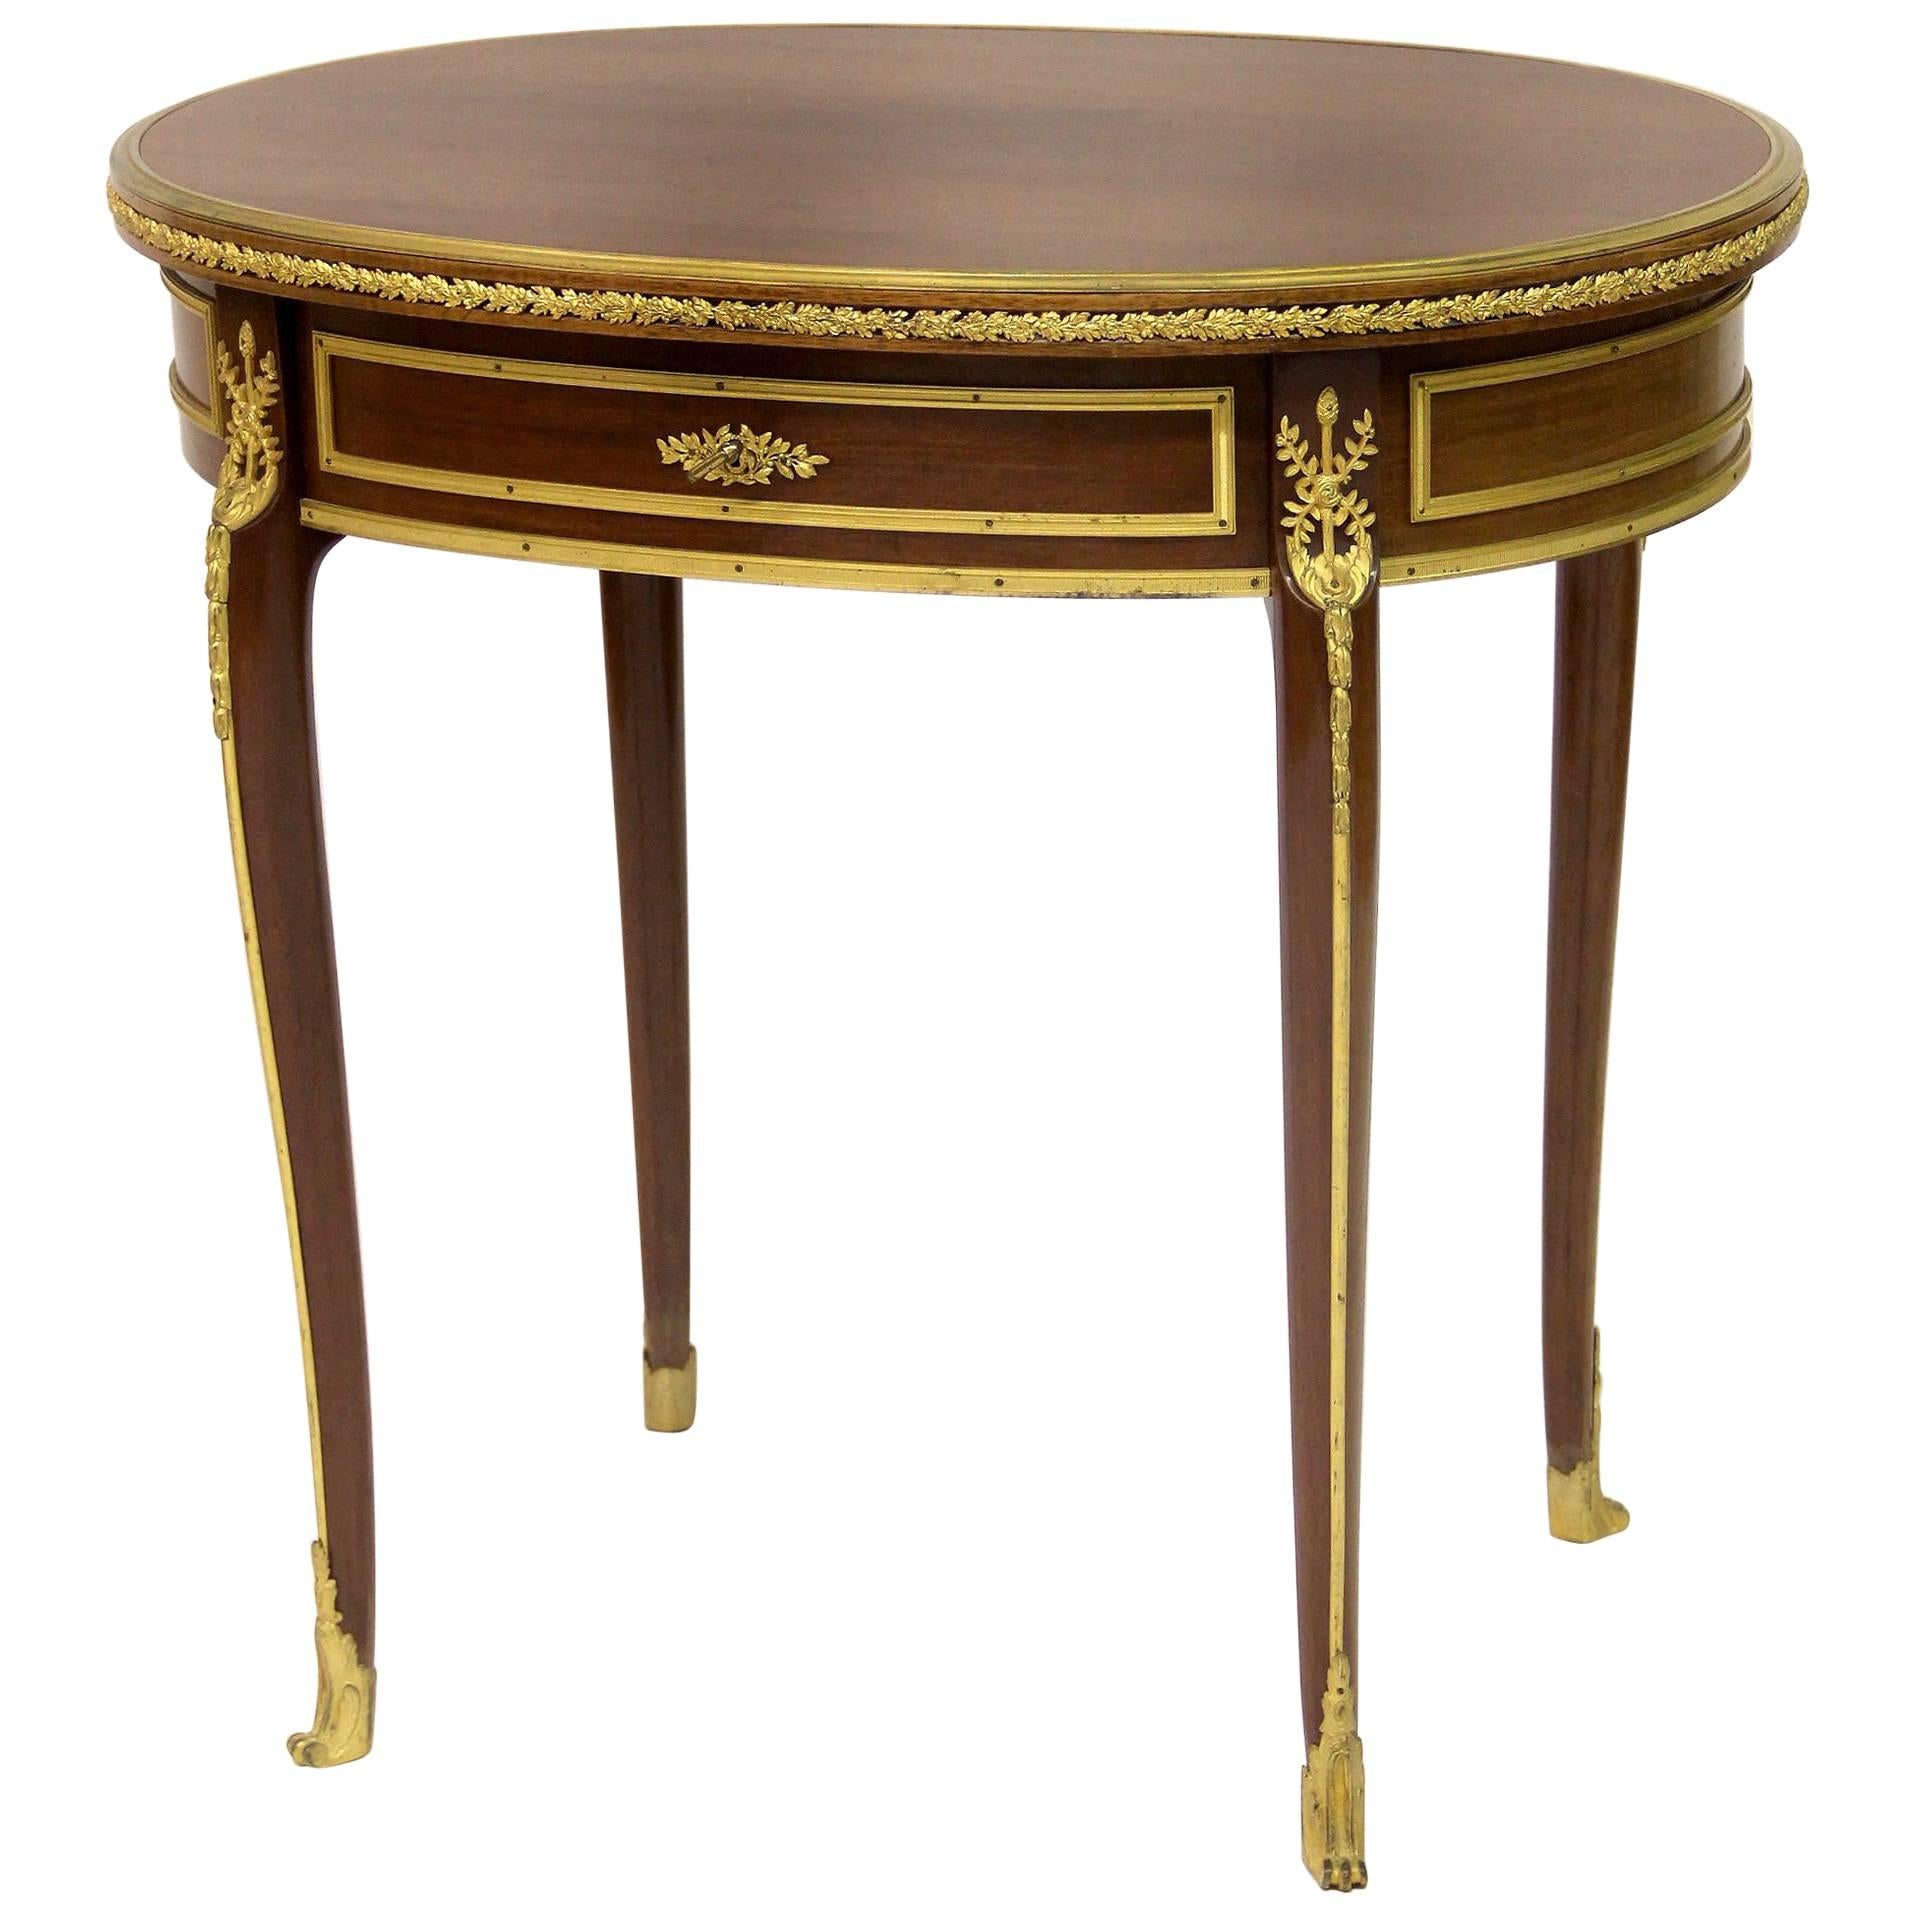 Table d'appoint de belle qualité de la fin du 19ème siècle montée sur bronze doré